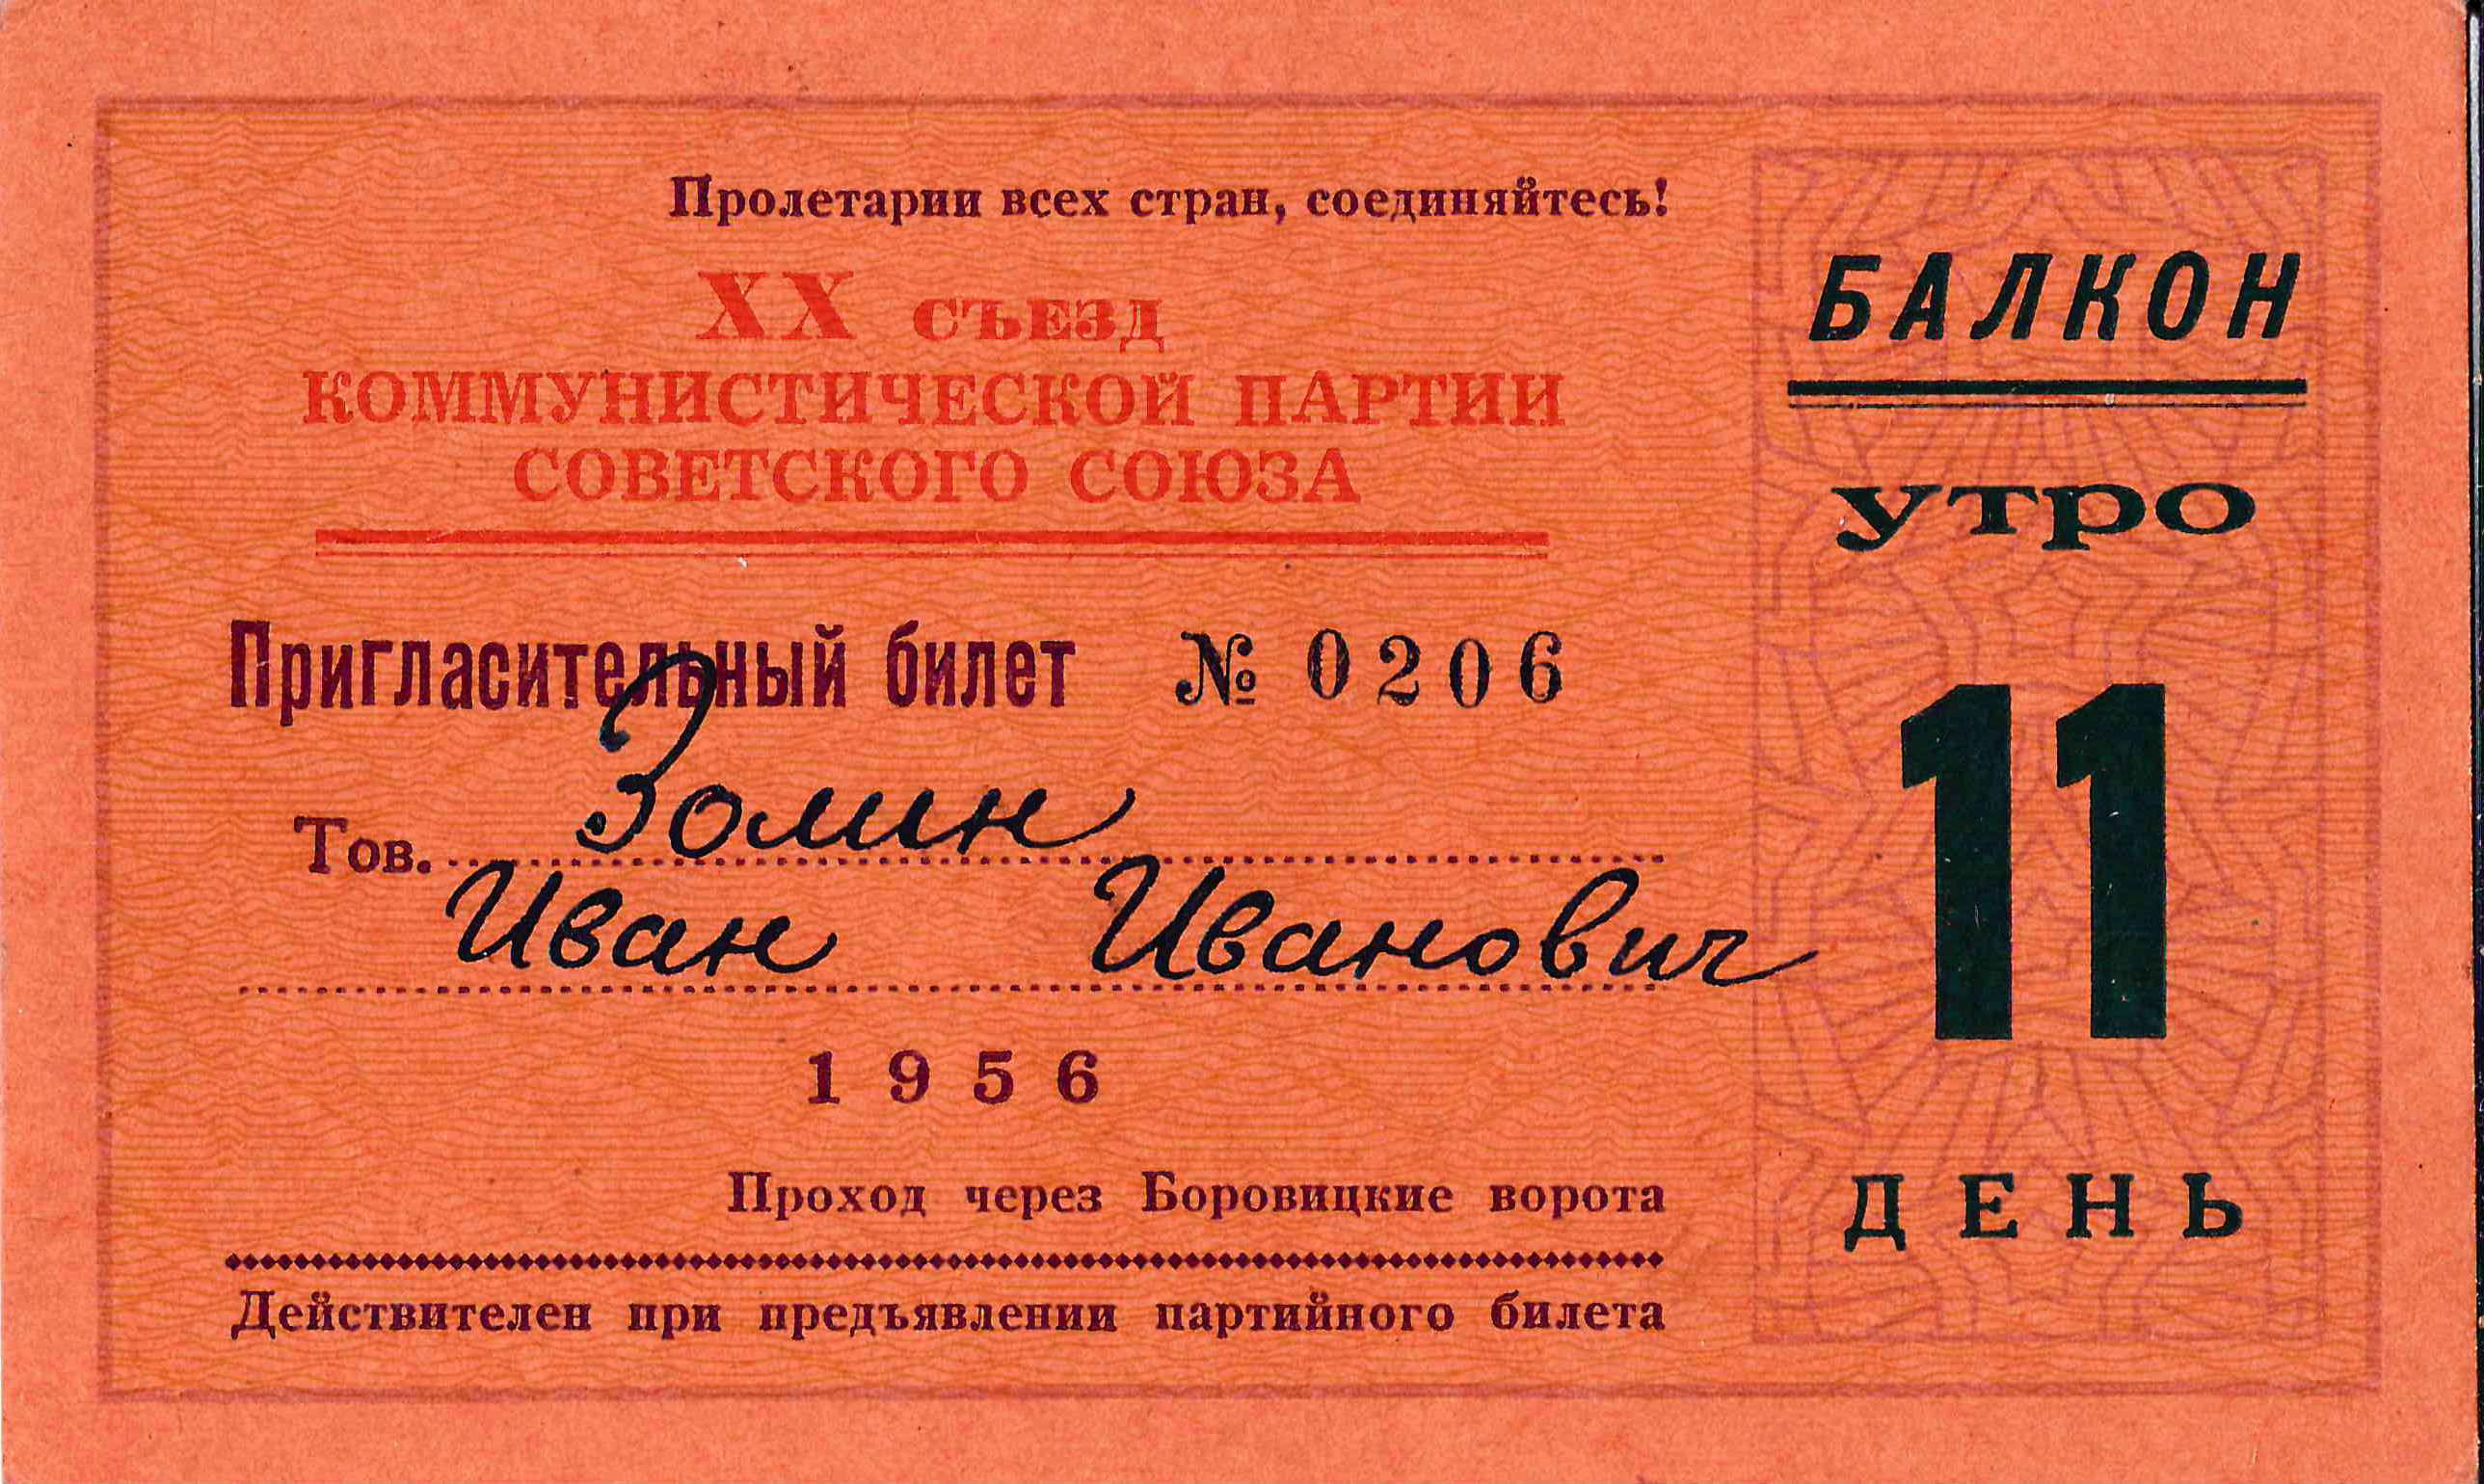 Пригласительный билет на XX съезд КПСС 24 февраля 1956 года на имя Ивана Ивановича Золина.